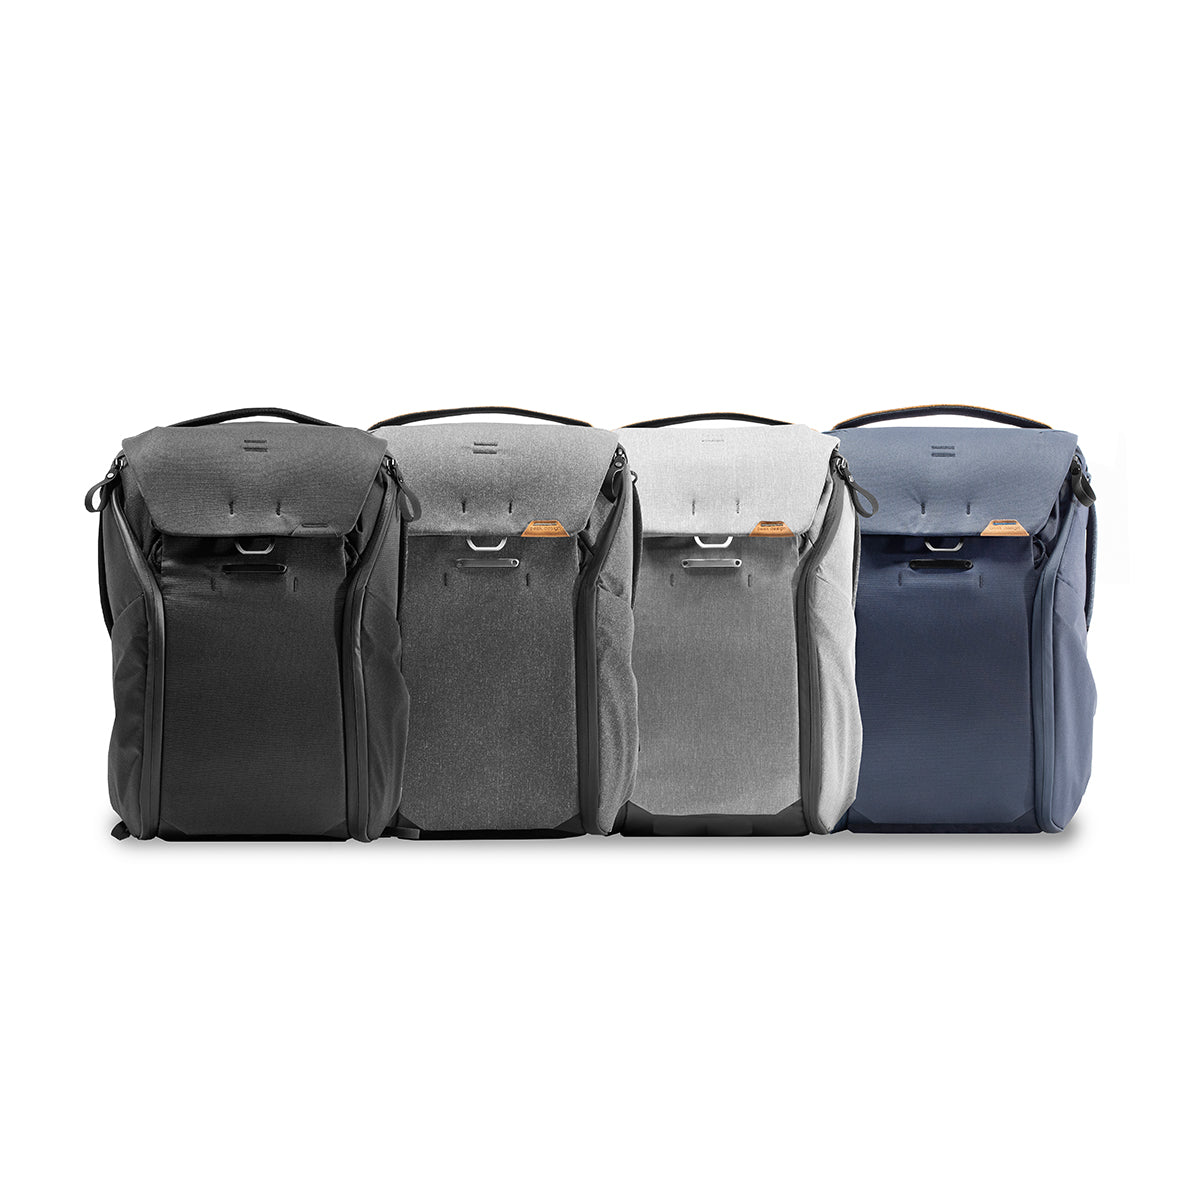 Peak Design Everyday Backpack 20L v2 - Charcoal